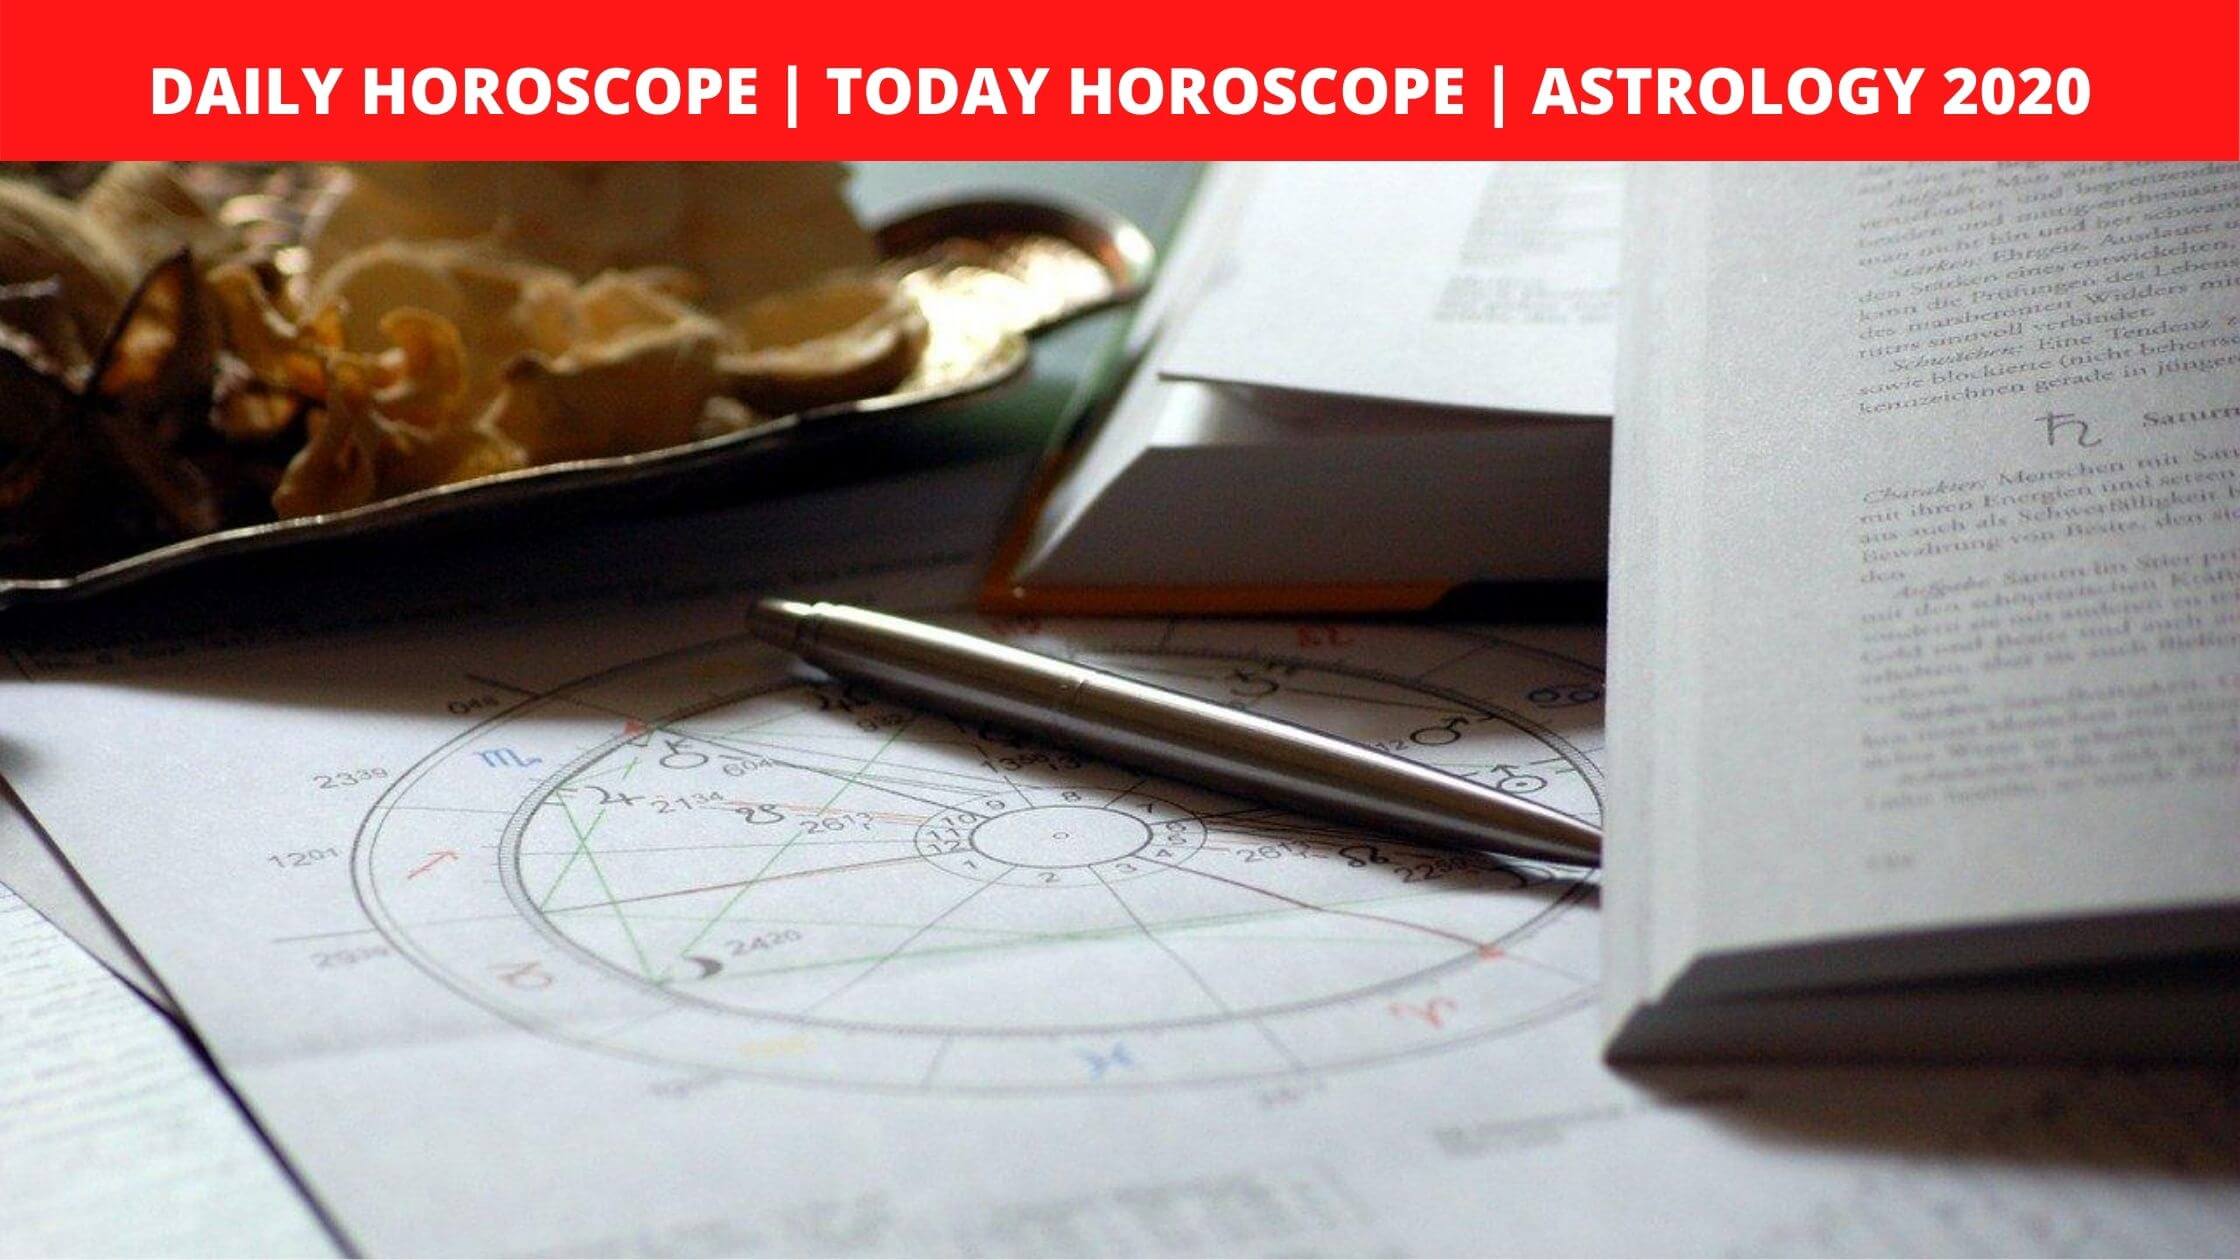 Daily Horoscope _ Today Horoscope _ Astrology 2020